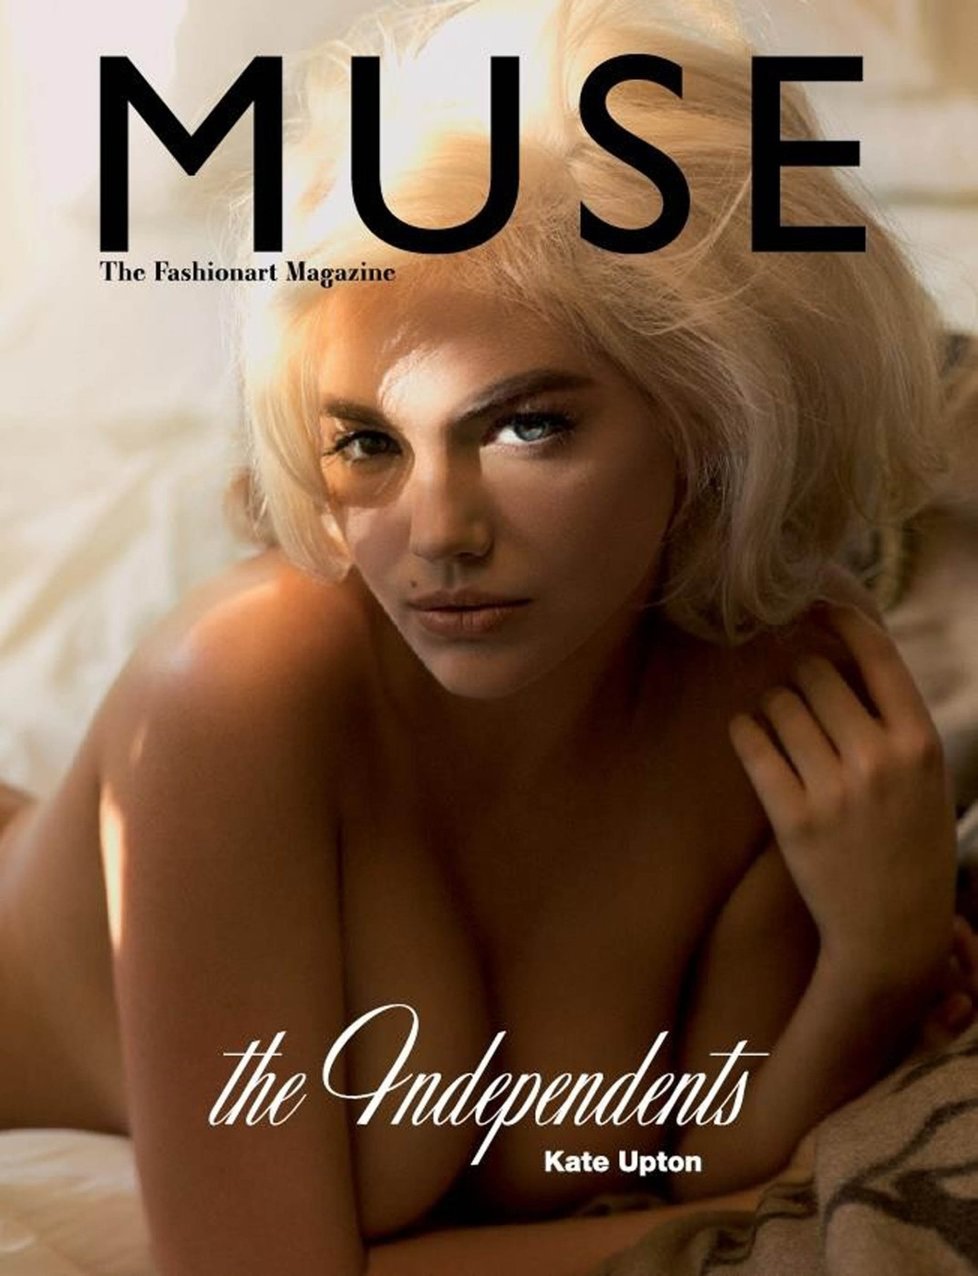 Kate Upton je na obálce časopisu Muse podobná Marilyn Monroe